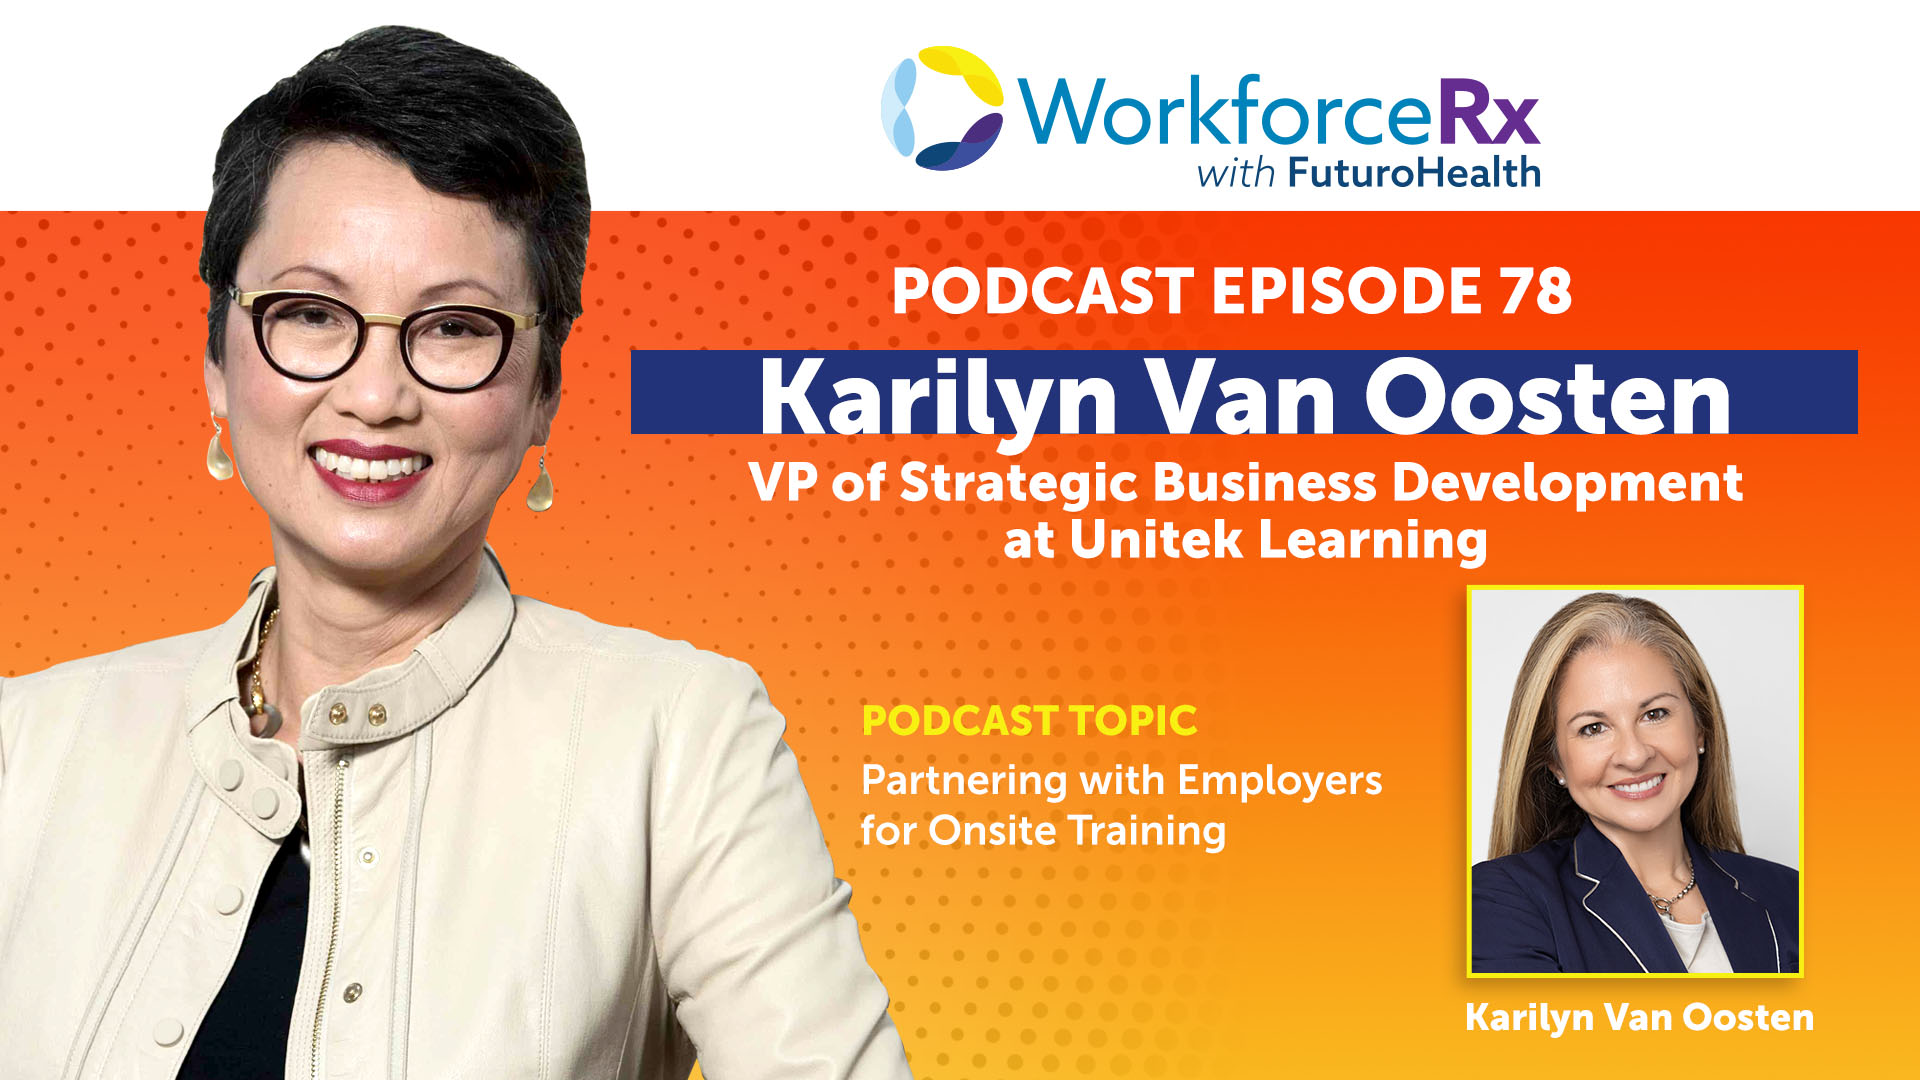 EP78 WorkforceRx Podcast Karilyn Van Oosten